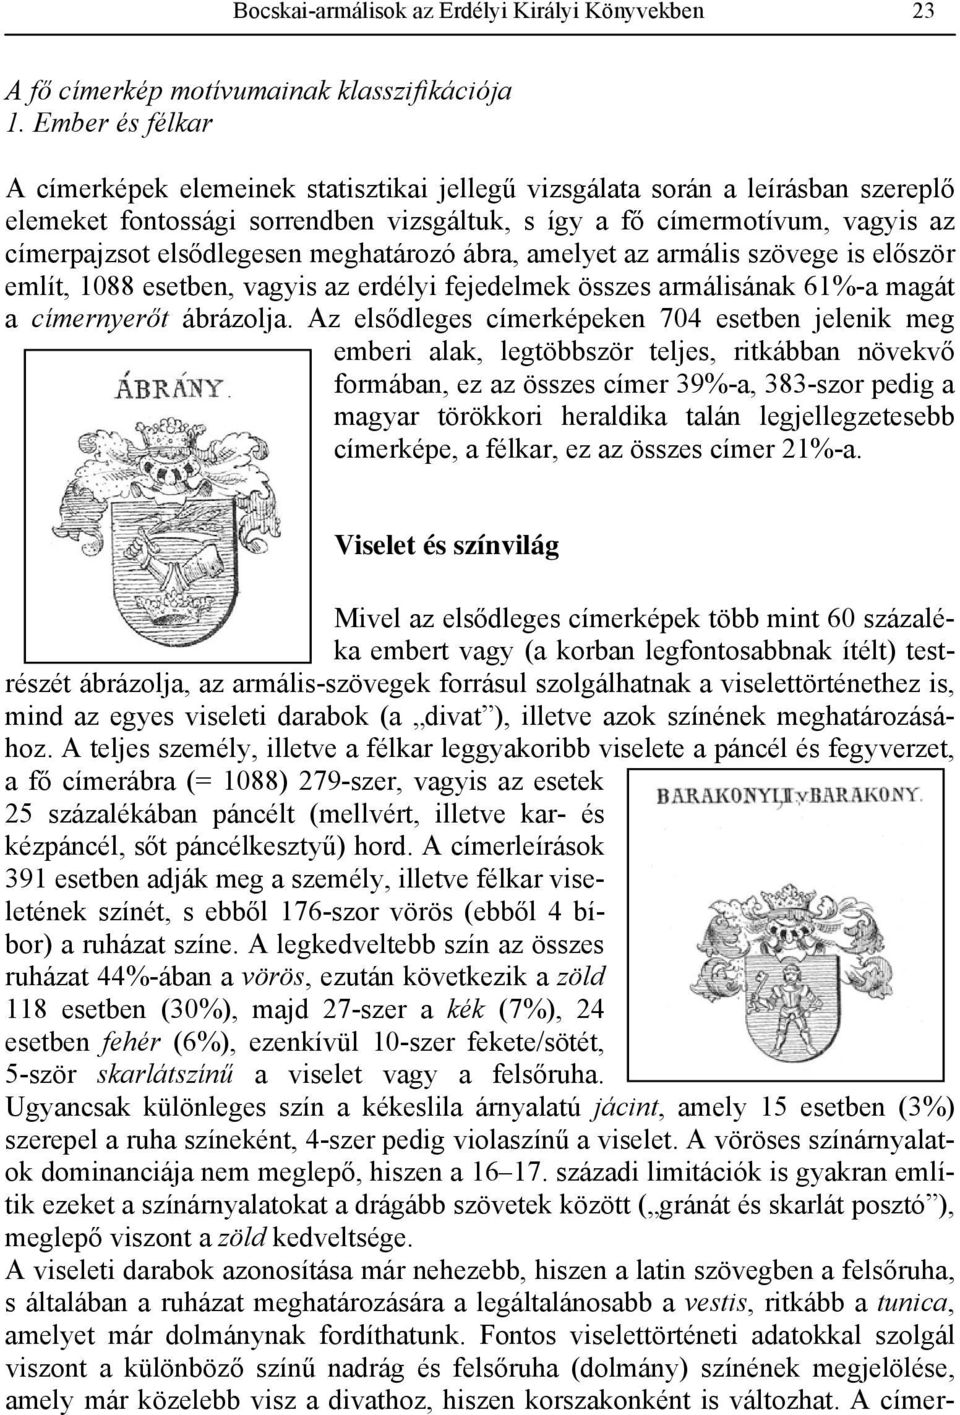 elsődlegesen meghatározó ábra, amelyet az armális szövege is először említ, 1088 esetben, vagyis az erdélyi fejedelmek összes armálisának 61%-a magát a címernyerőt ábrázolja.